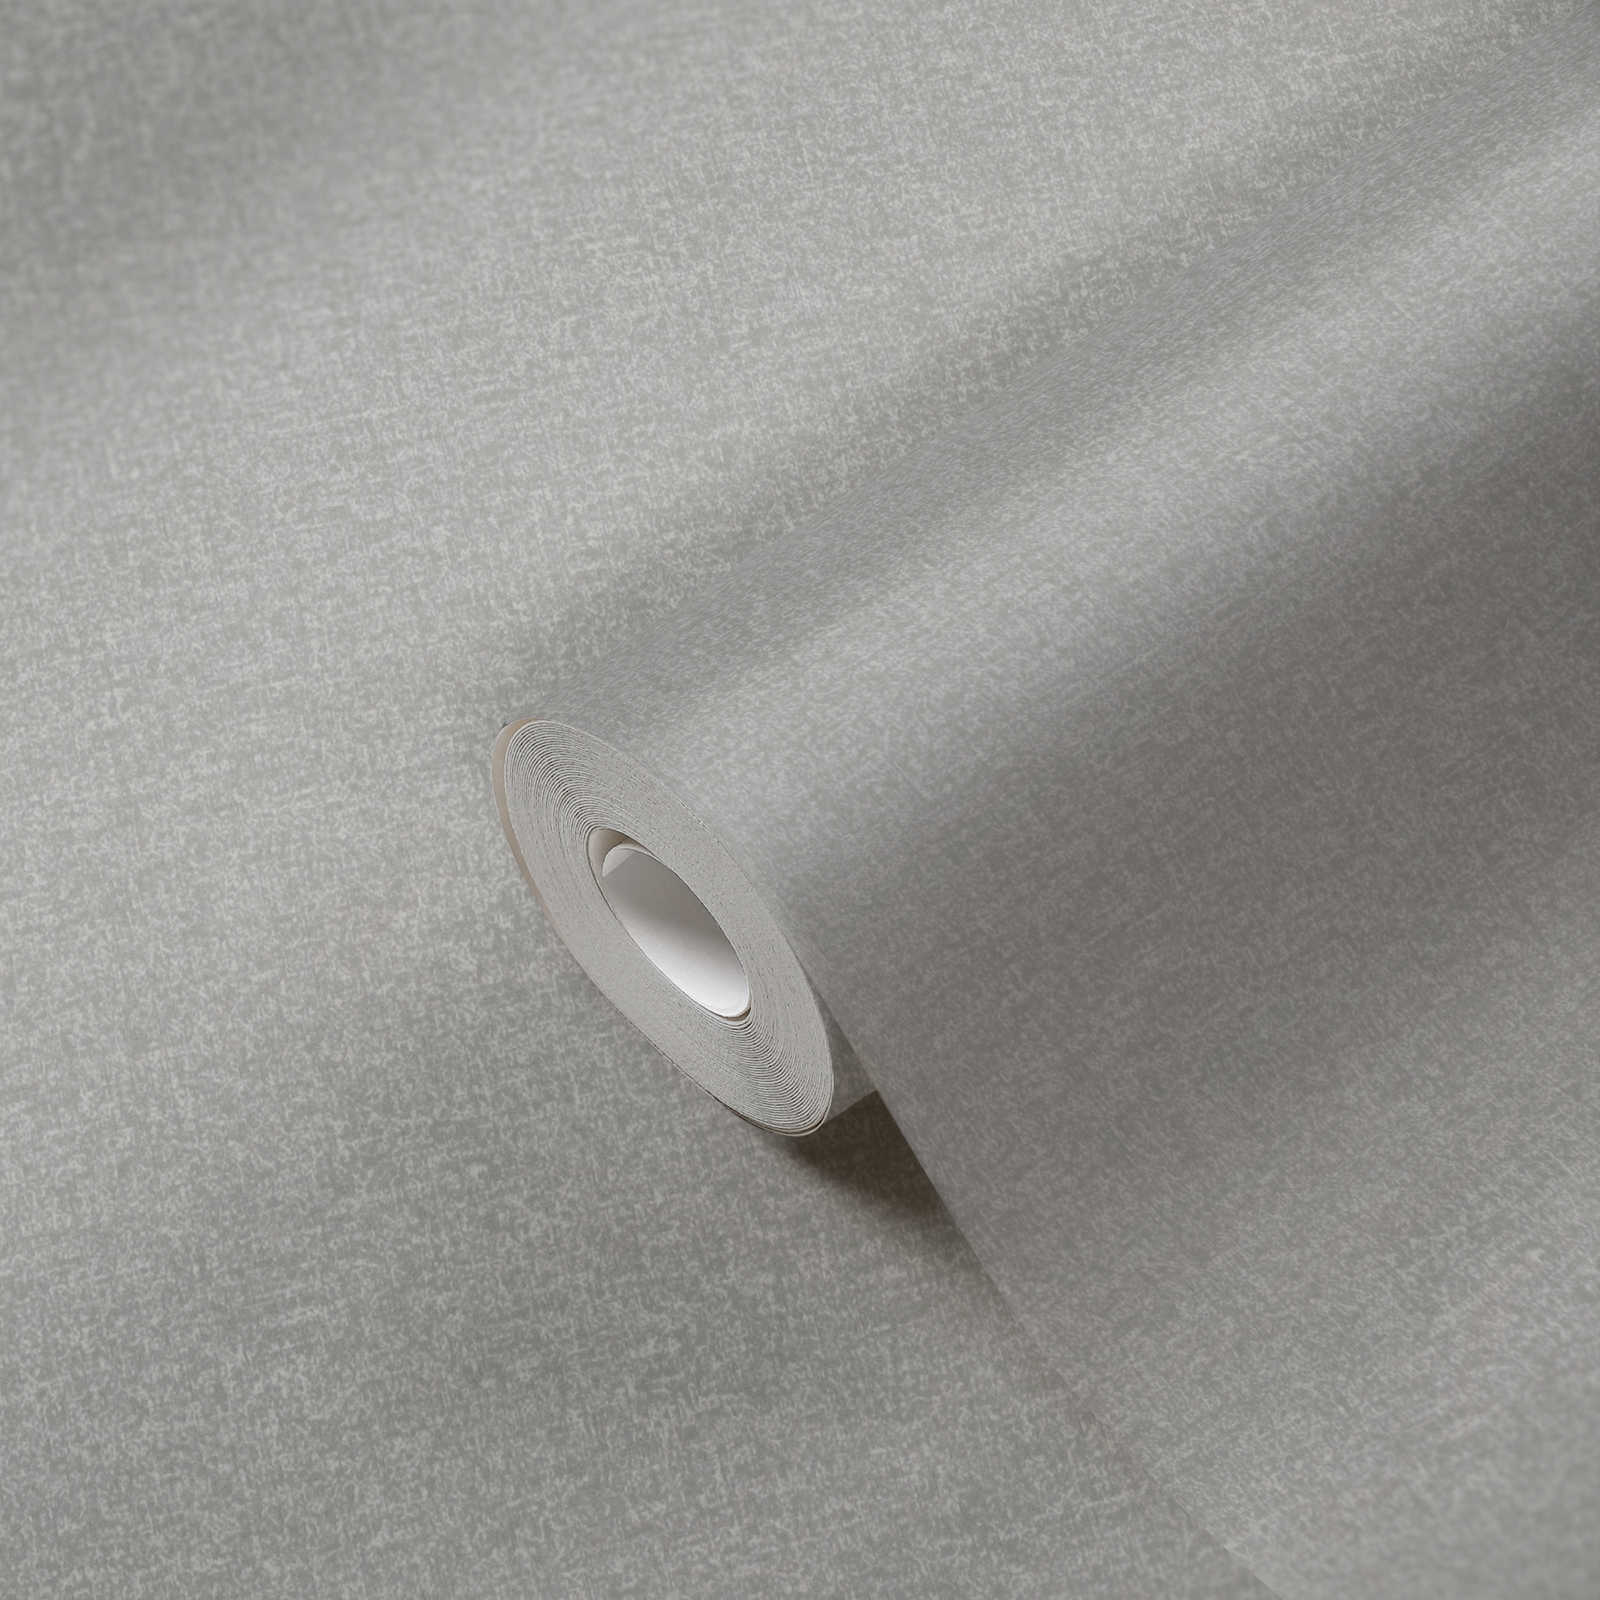             Vliestapete einfarbig mit leichten Strukturmuster – Grau
        